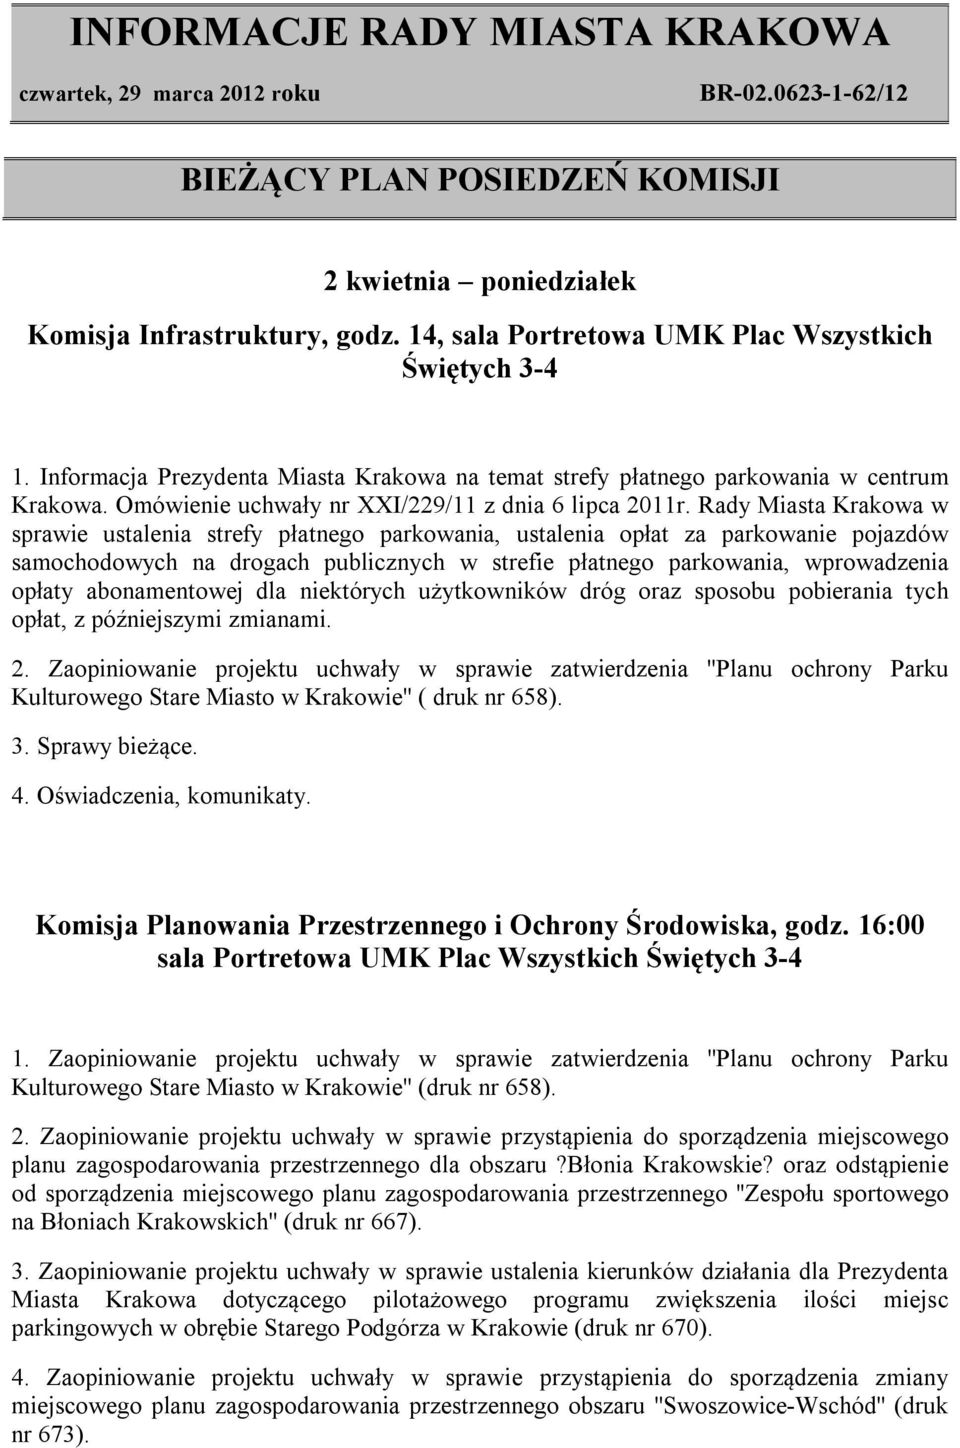 Rady Miasta Krakowa w sprawie ustalenia strefy płatnego parkowania, ustalenia opłat za parkowanie pojazdów samochodowych na drogach publicznych w strefie płatnego parkowania, wprowadzenia opłaty